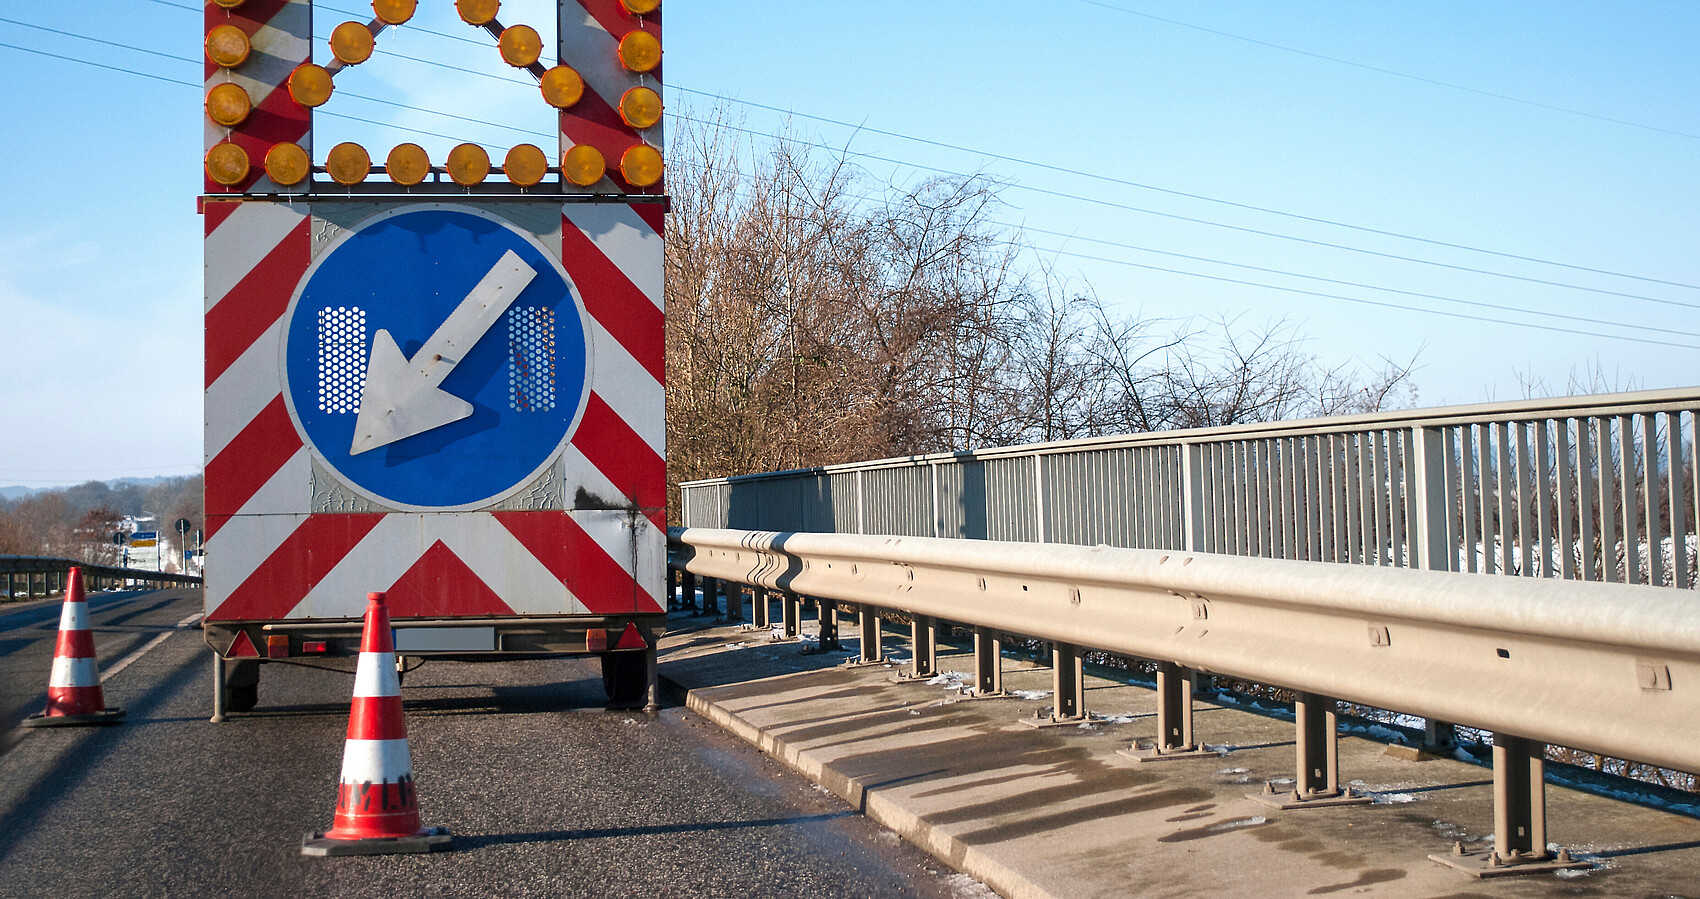 Blick auf eine Brücke auf der sich ein Baustellenfahrzeug mit einem Hinweisschild auf eine Fahrbahnverengung befindet